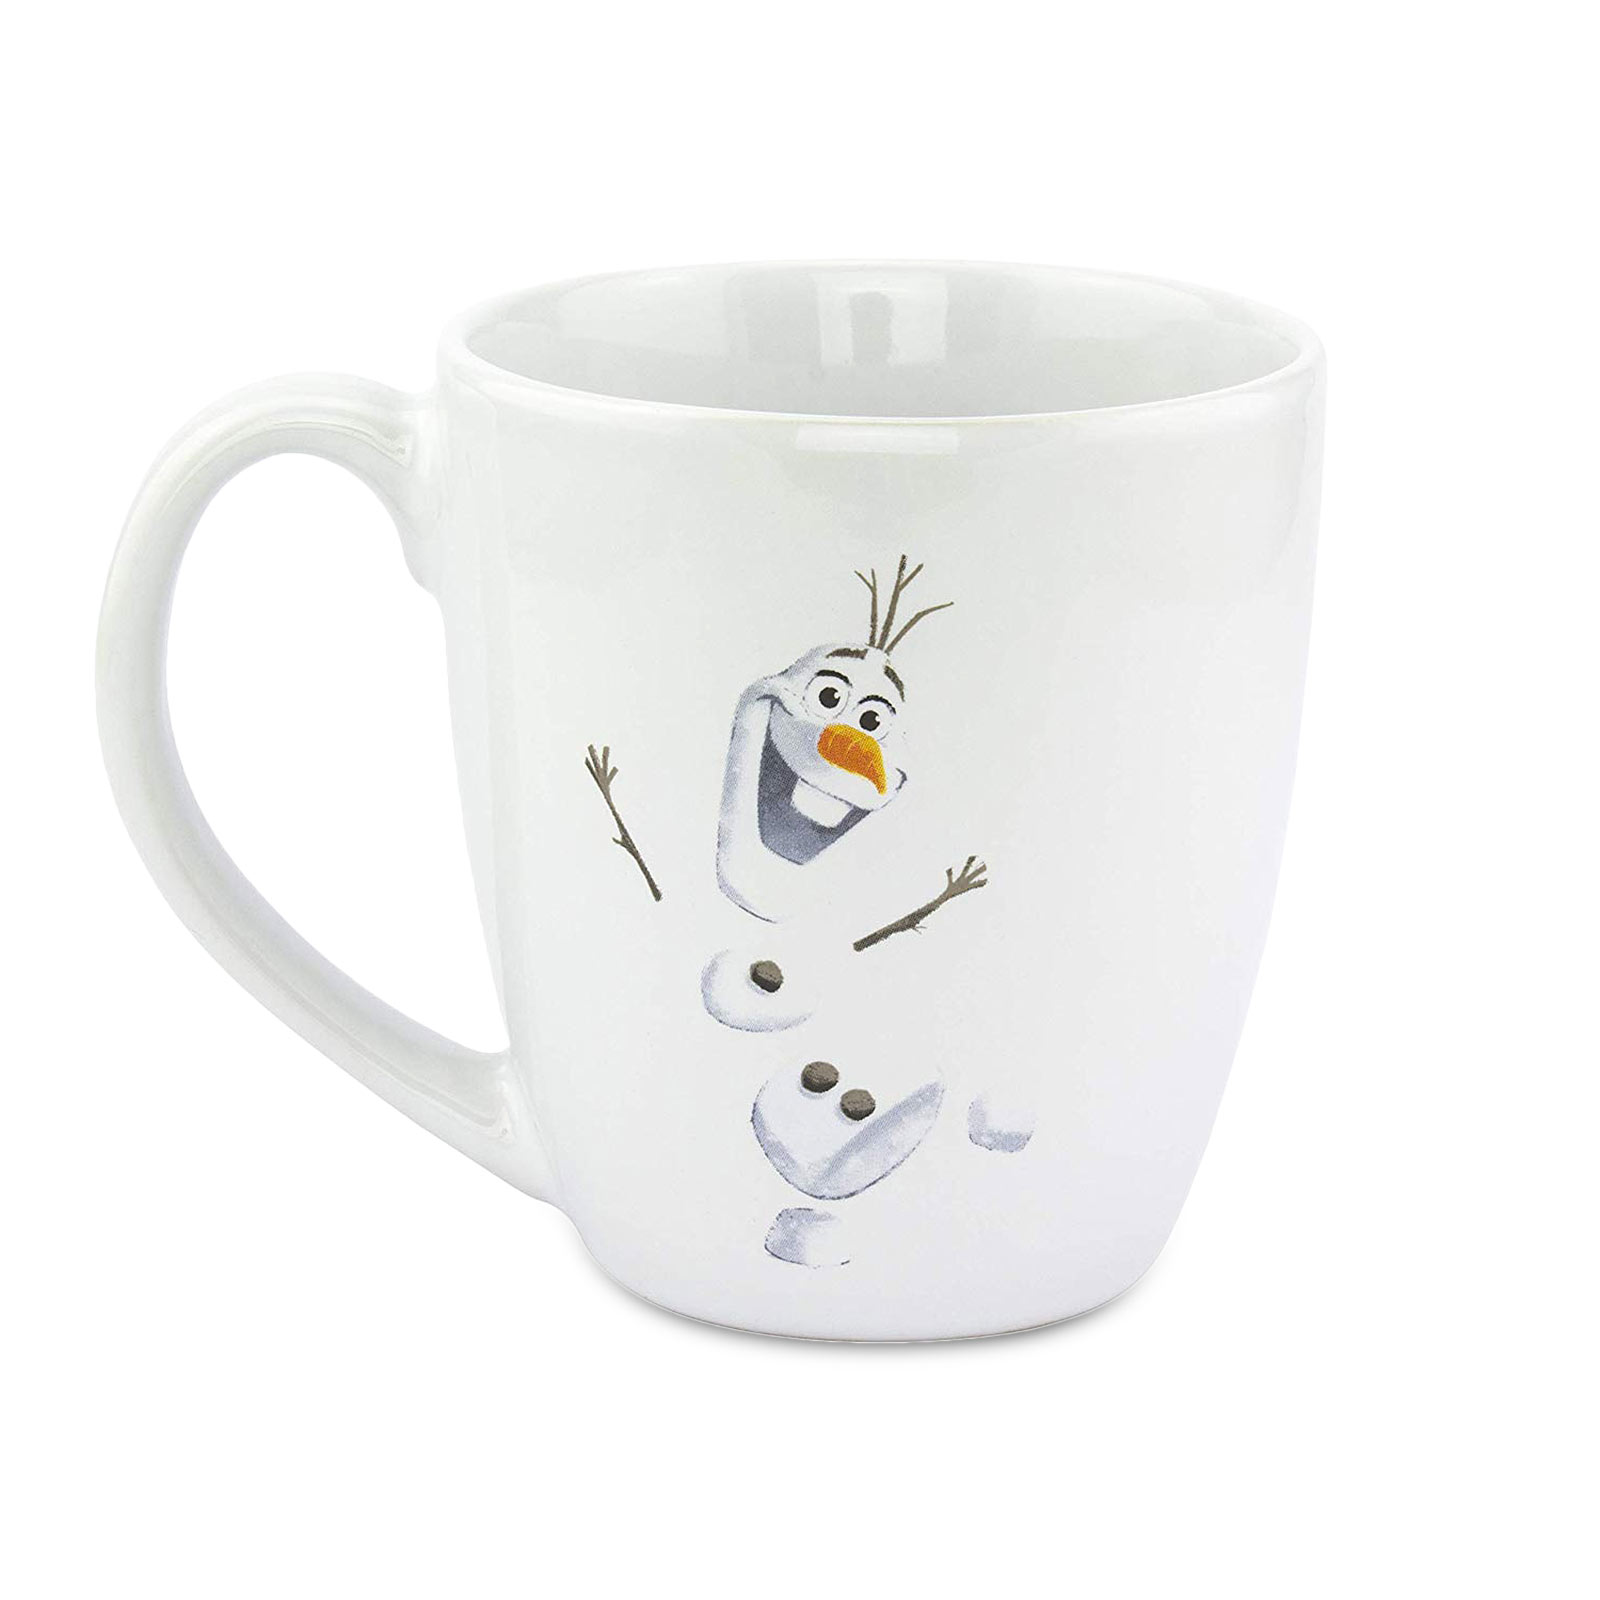 Frozen - Tasse Olaf avec chauffe-tasse